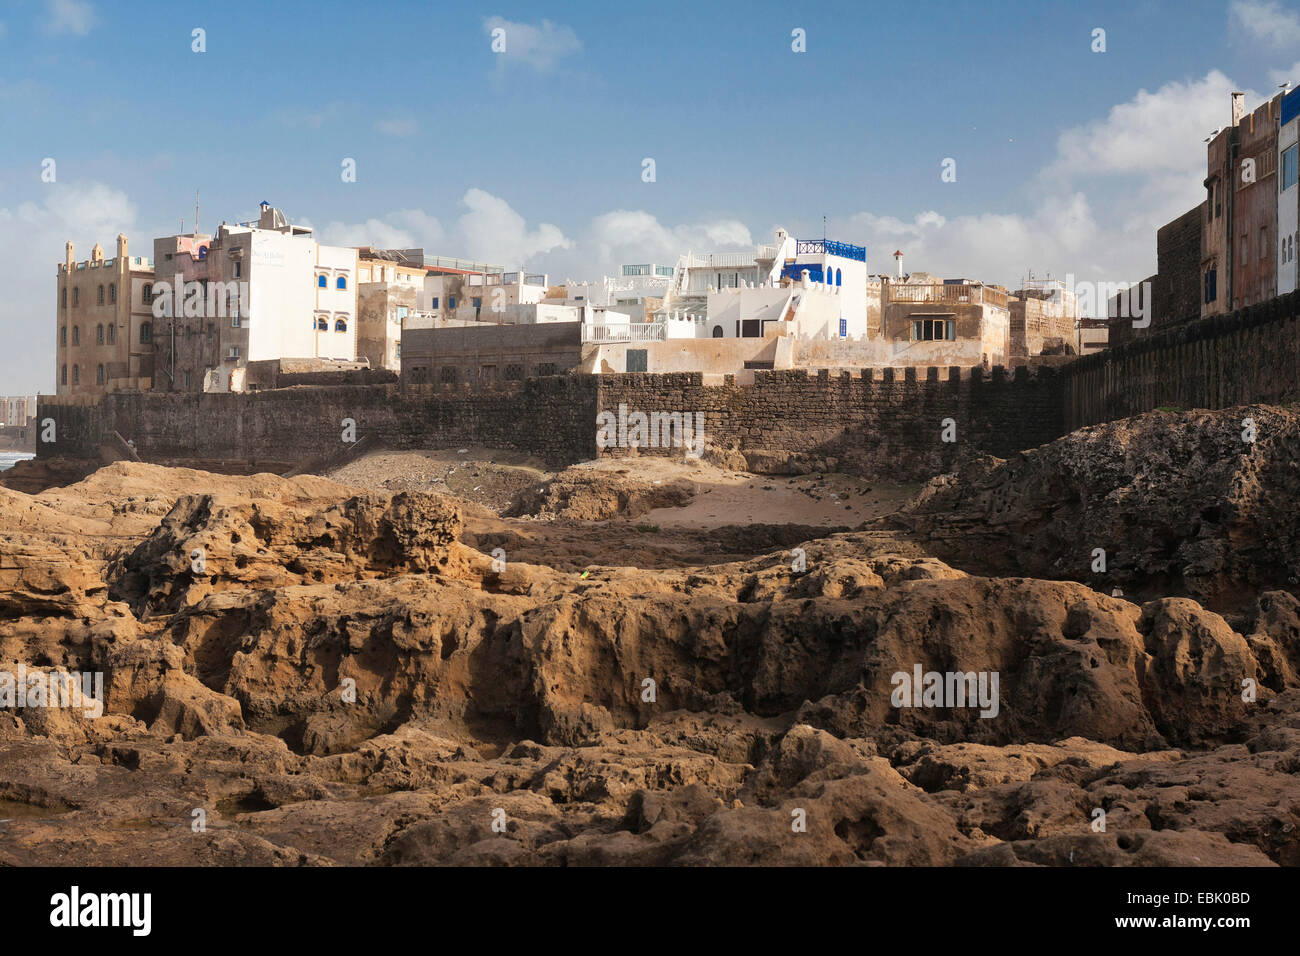 City &# 8203 ;&# 8203;mur d'Essaouira, Maroc, Mauer, Essaouira Banque D'Images